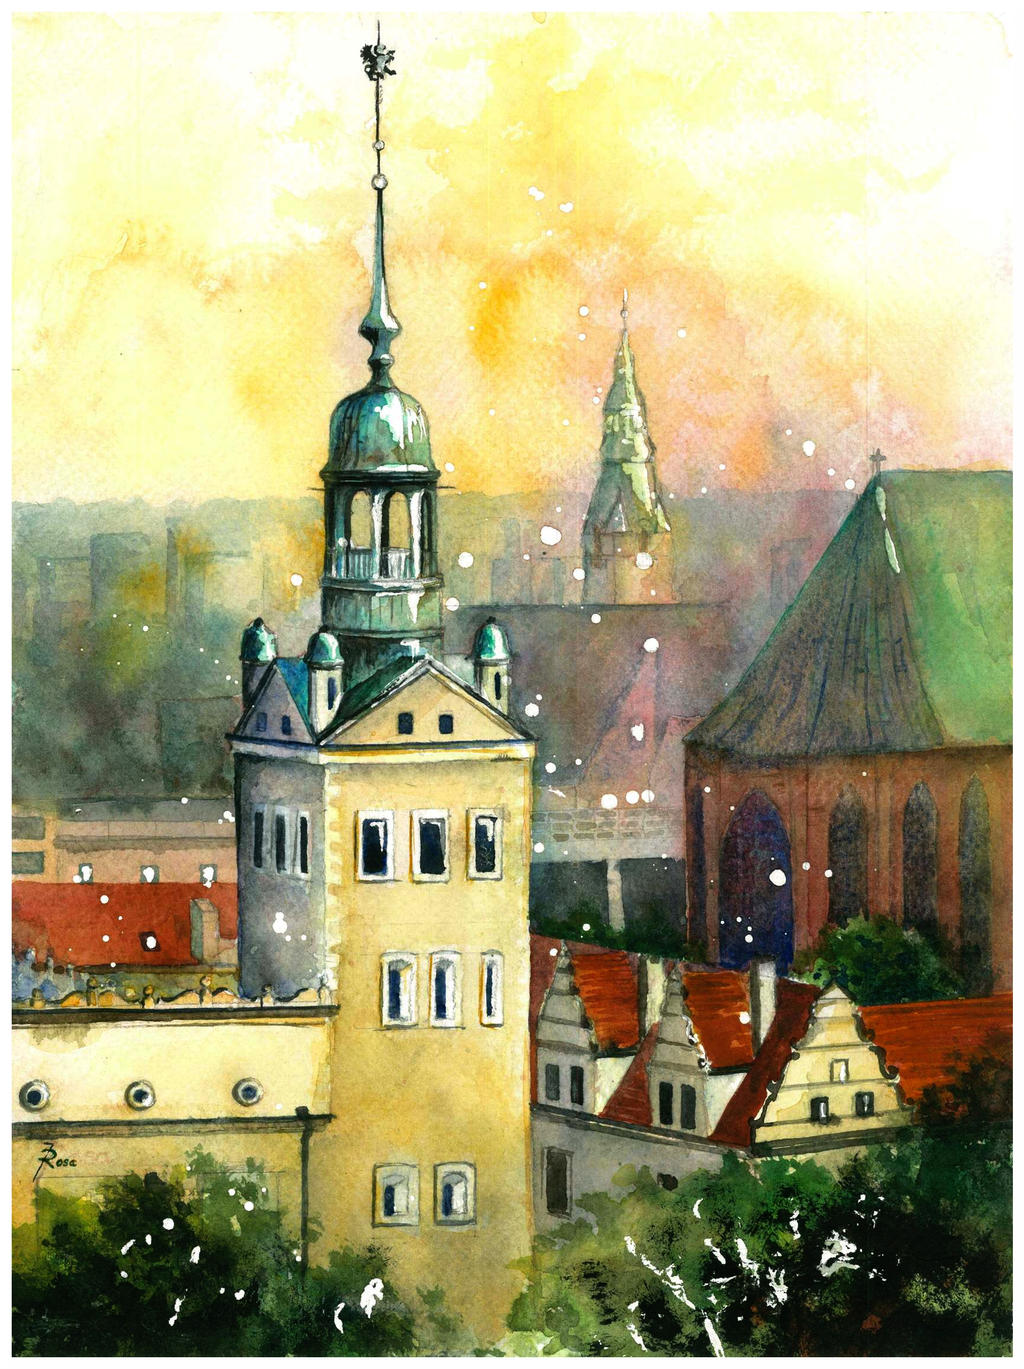 Szczecin: Castle tower